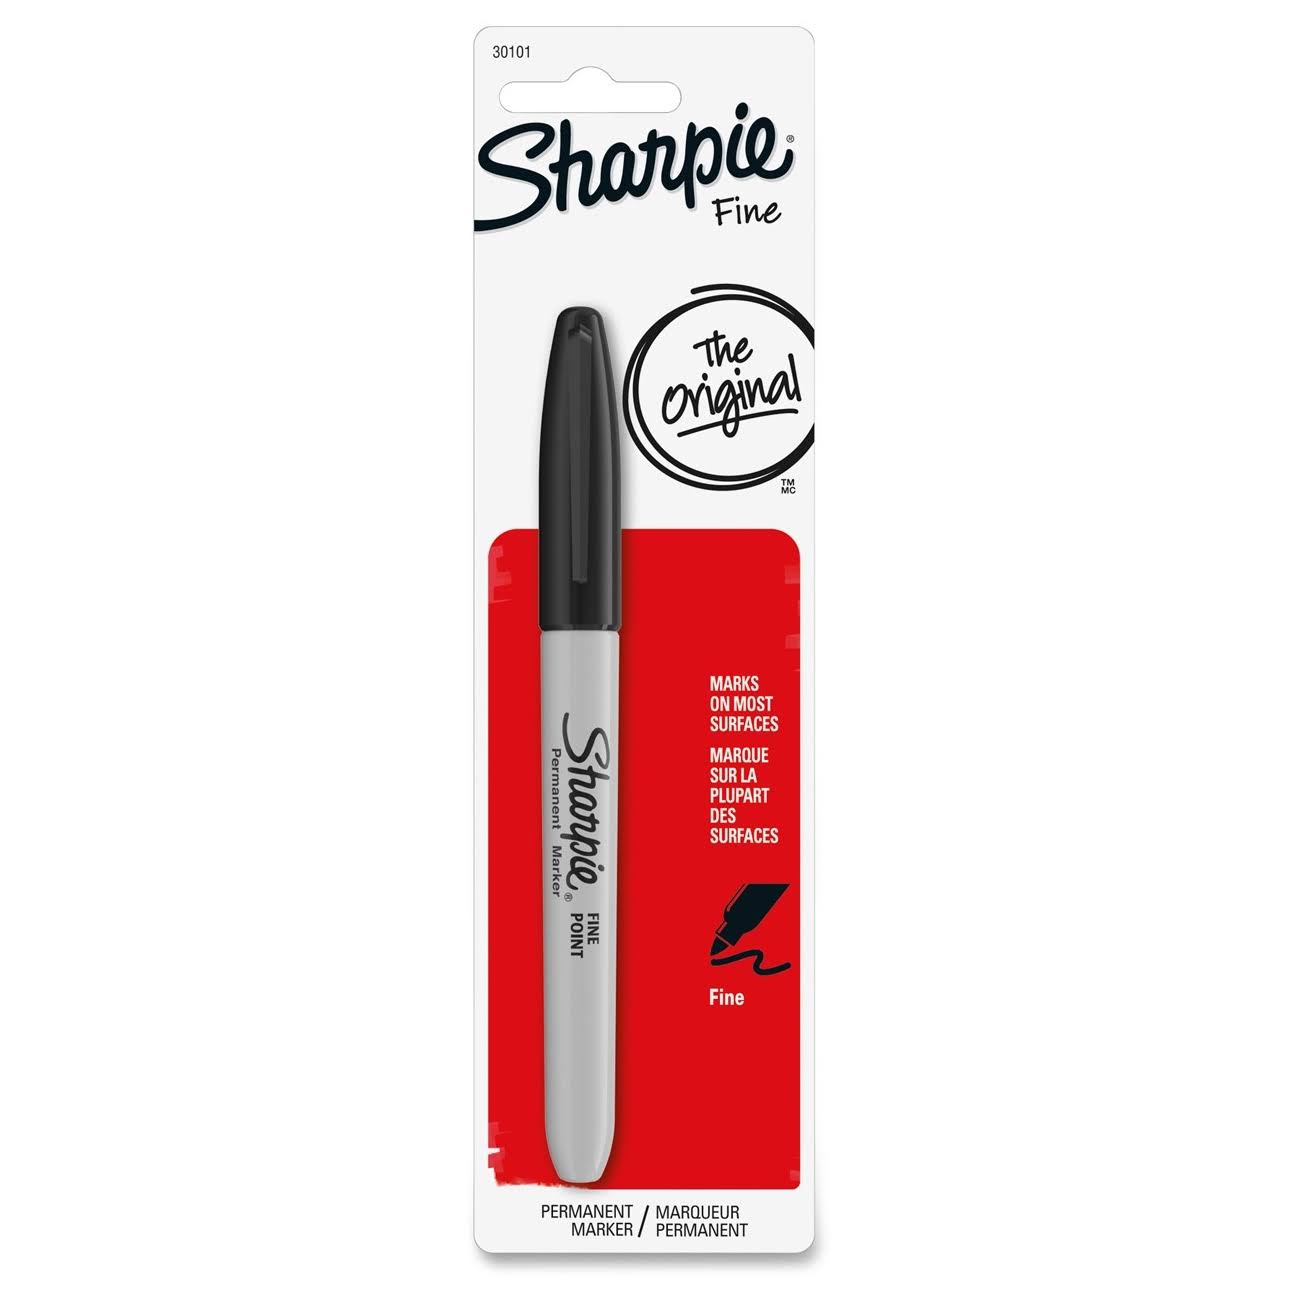 Sharpie Permanent Marker - Fine Tip, Black